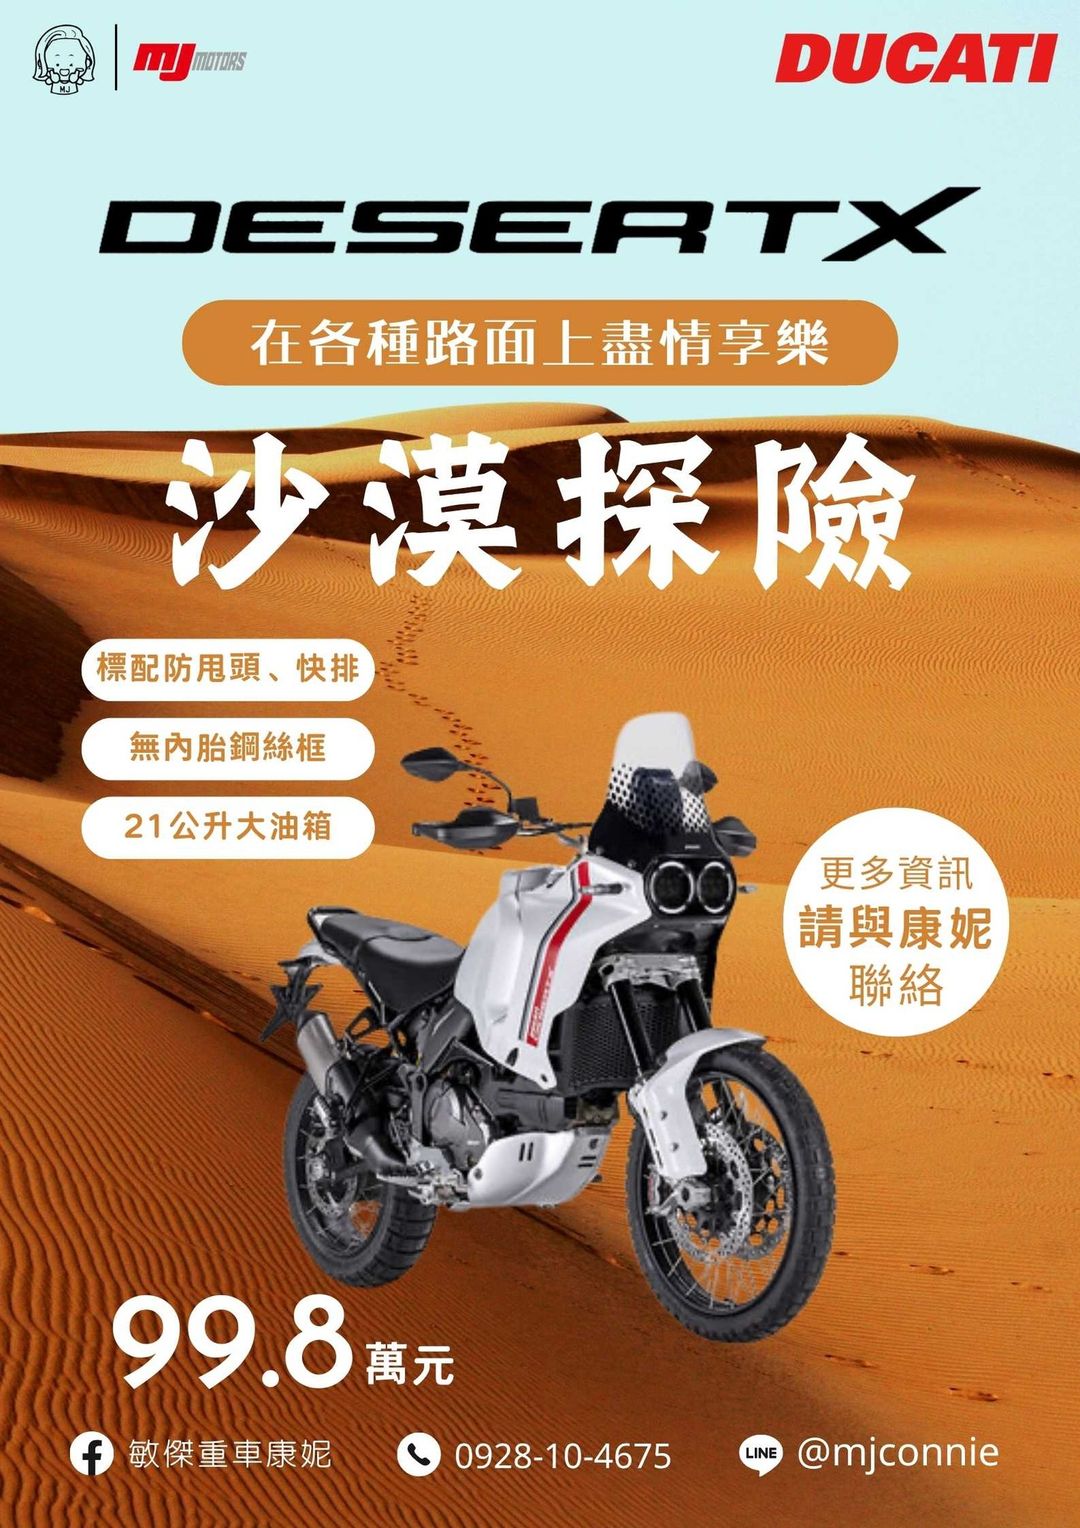 【敏傑車業資深銷售專員 康妮 Connie】Ducati Desert X - 「Webike-摩托車市」 『敏傑康妮』Ducati Desert X 多功能車界的靈活一哥!! 高端動力模式/ 進退快排 價格99.8萬元